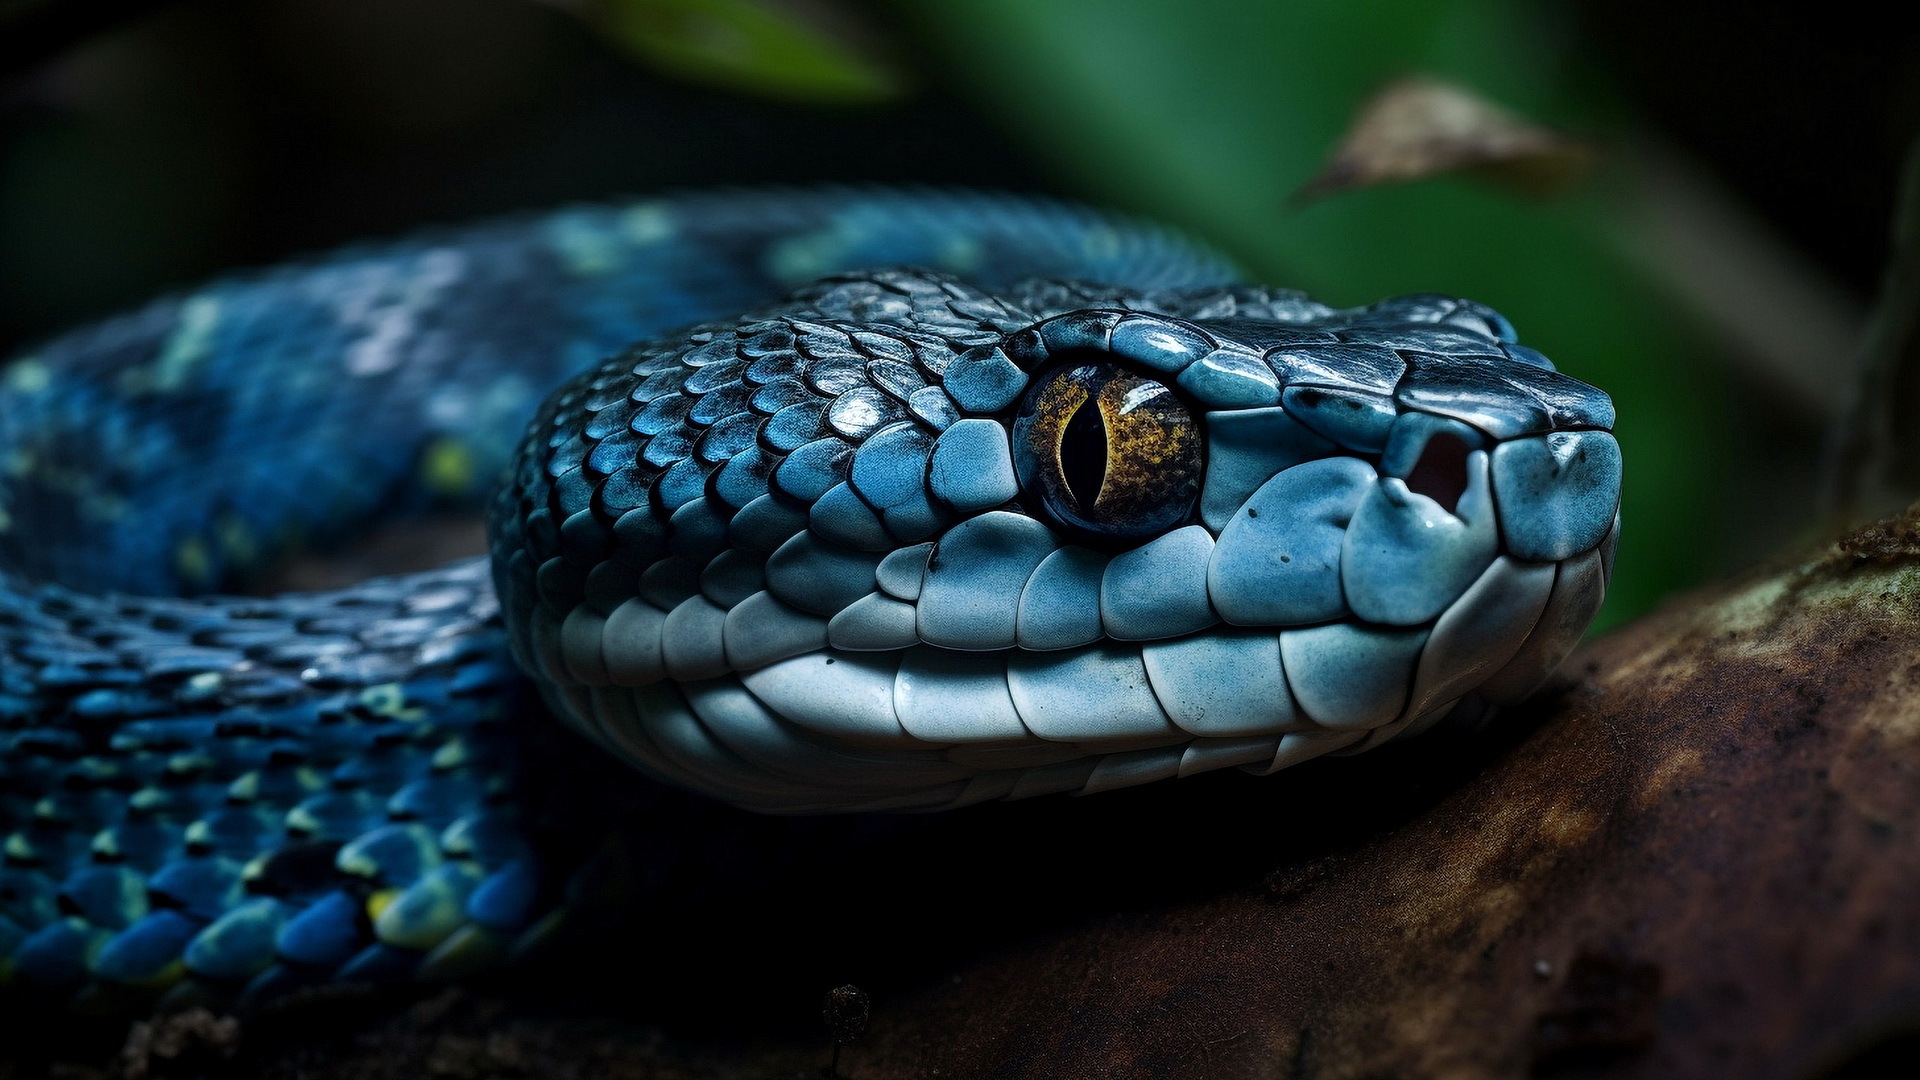 A blue snake on a tree branch